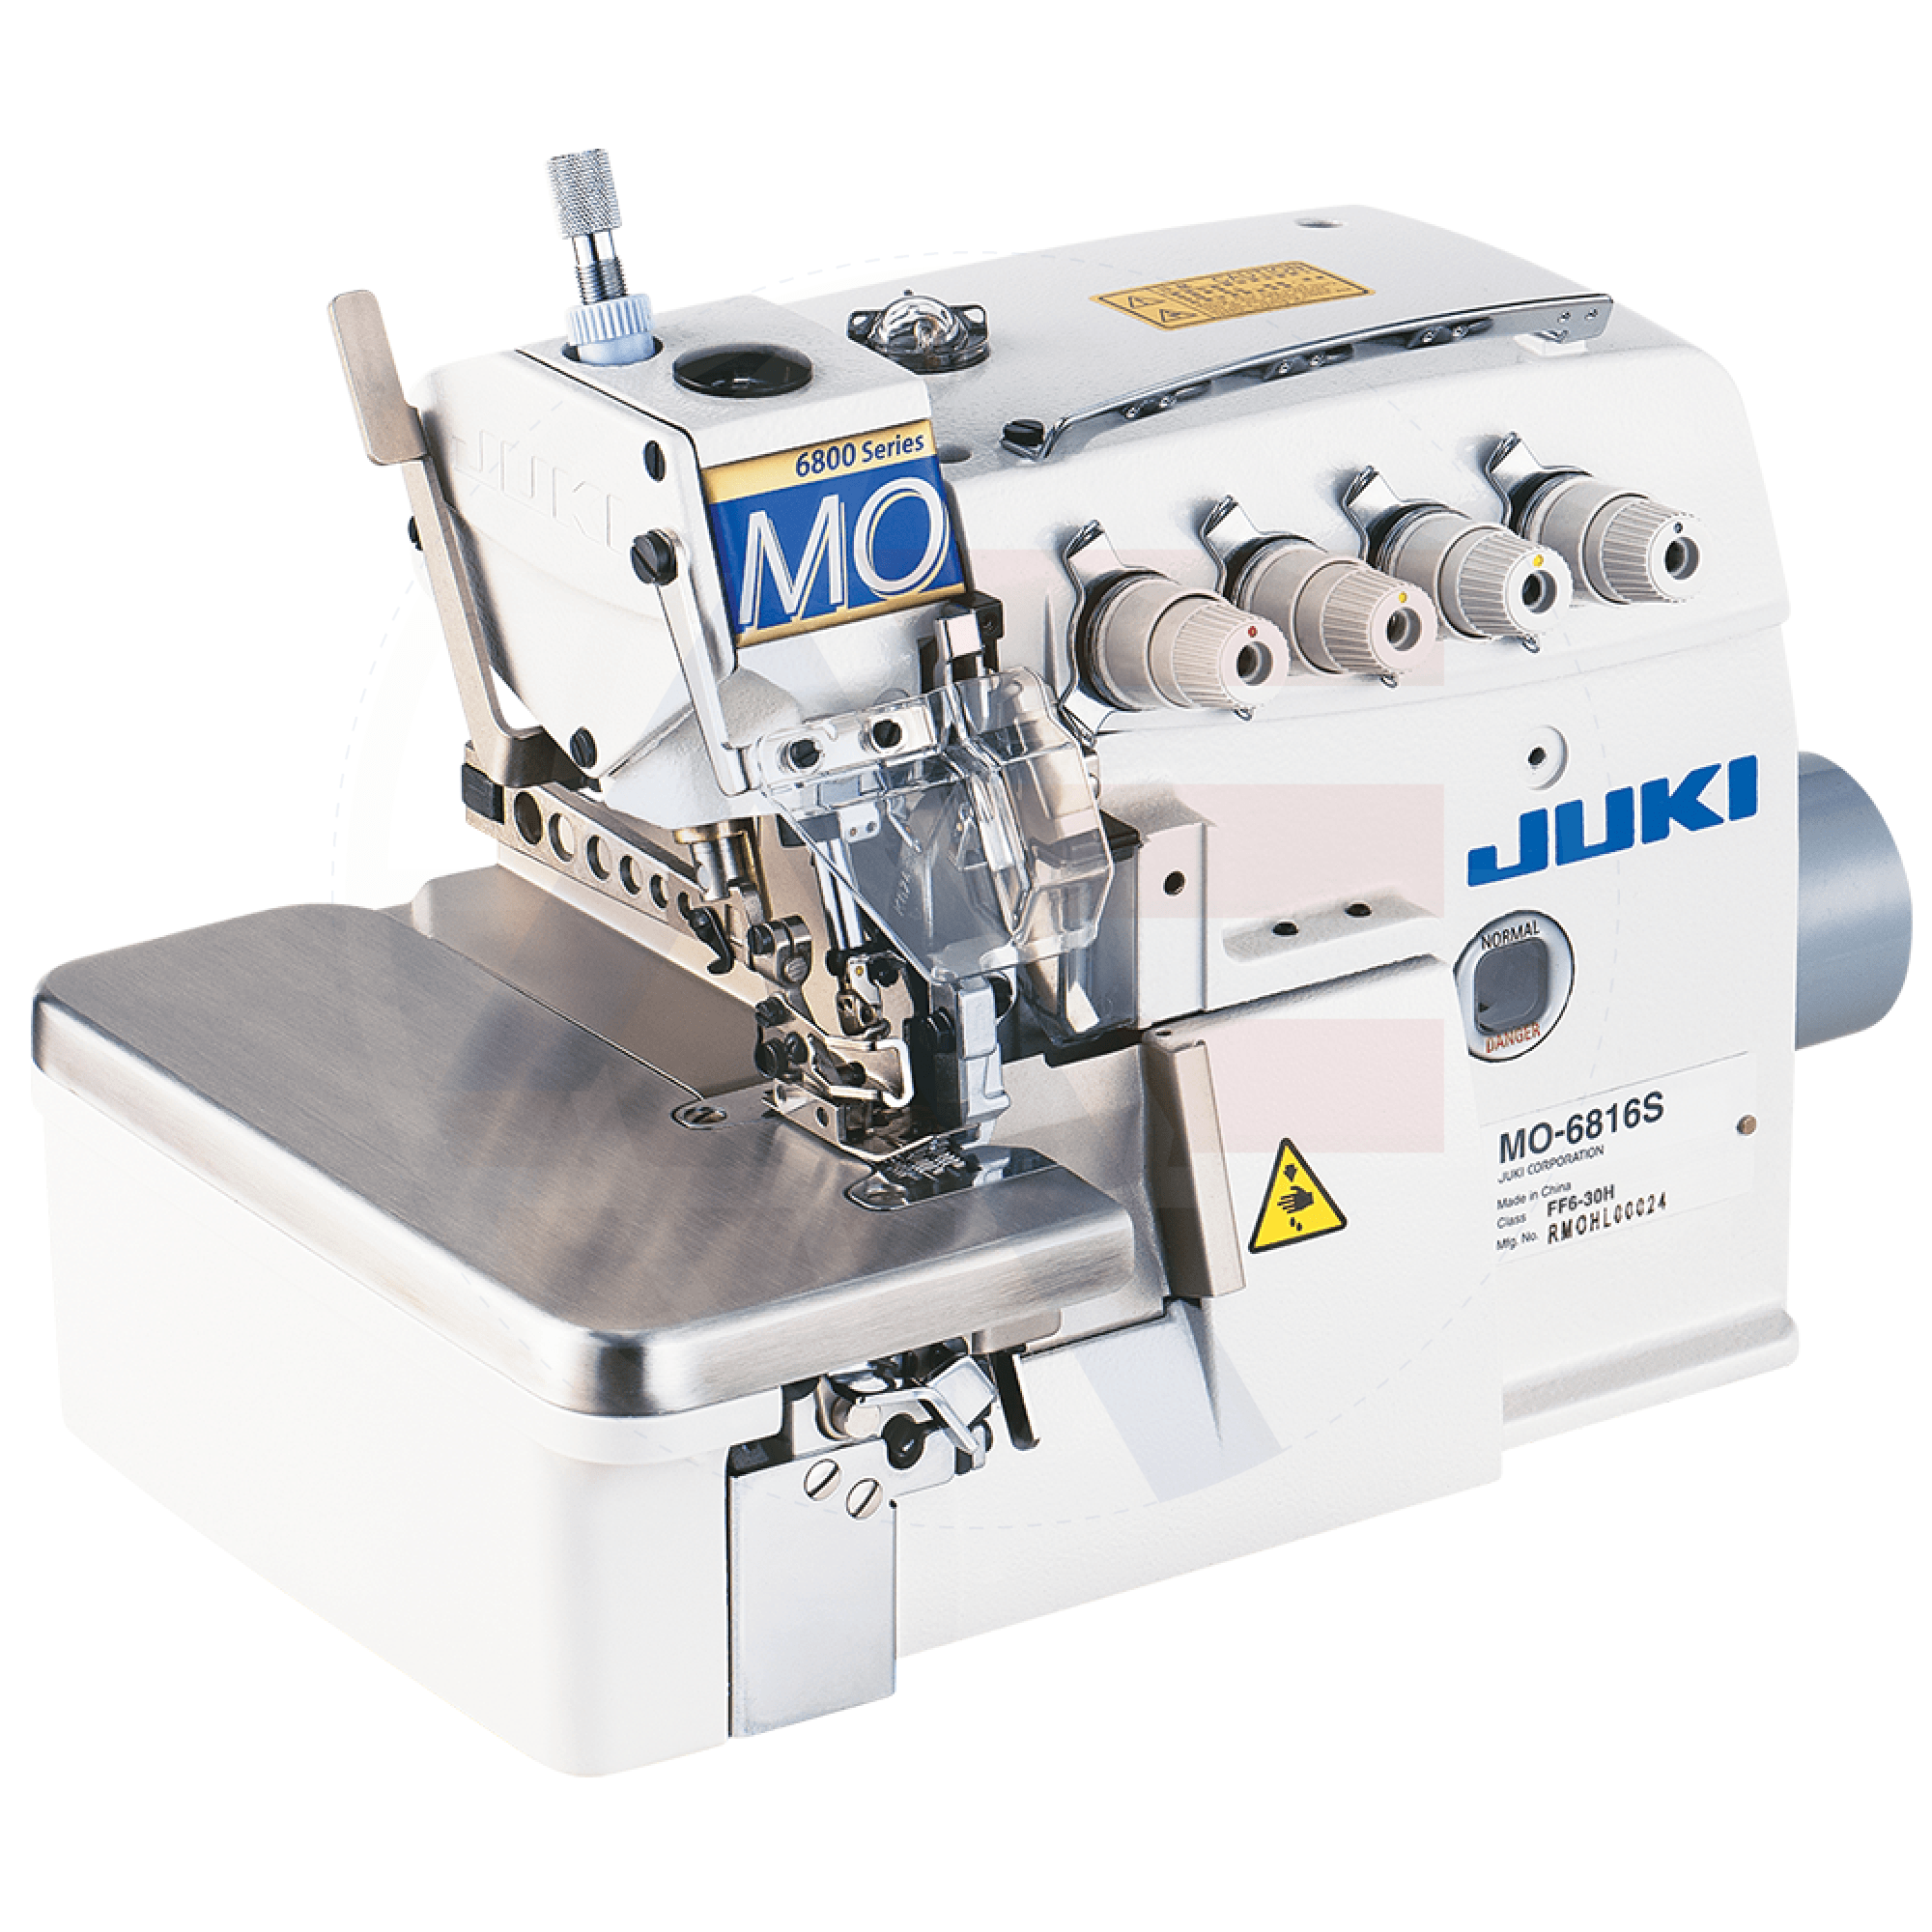 Juki Mo-6816S 5-Thread Overlock Machine Sewing Machines